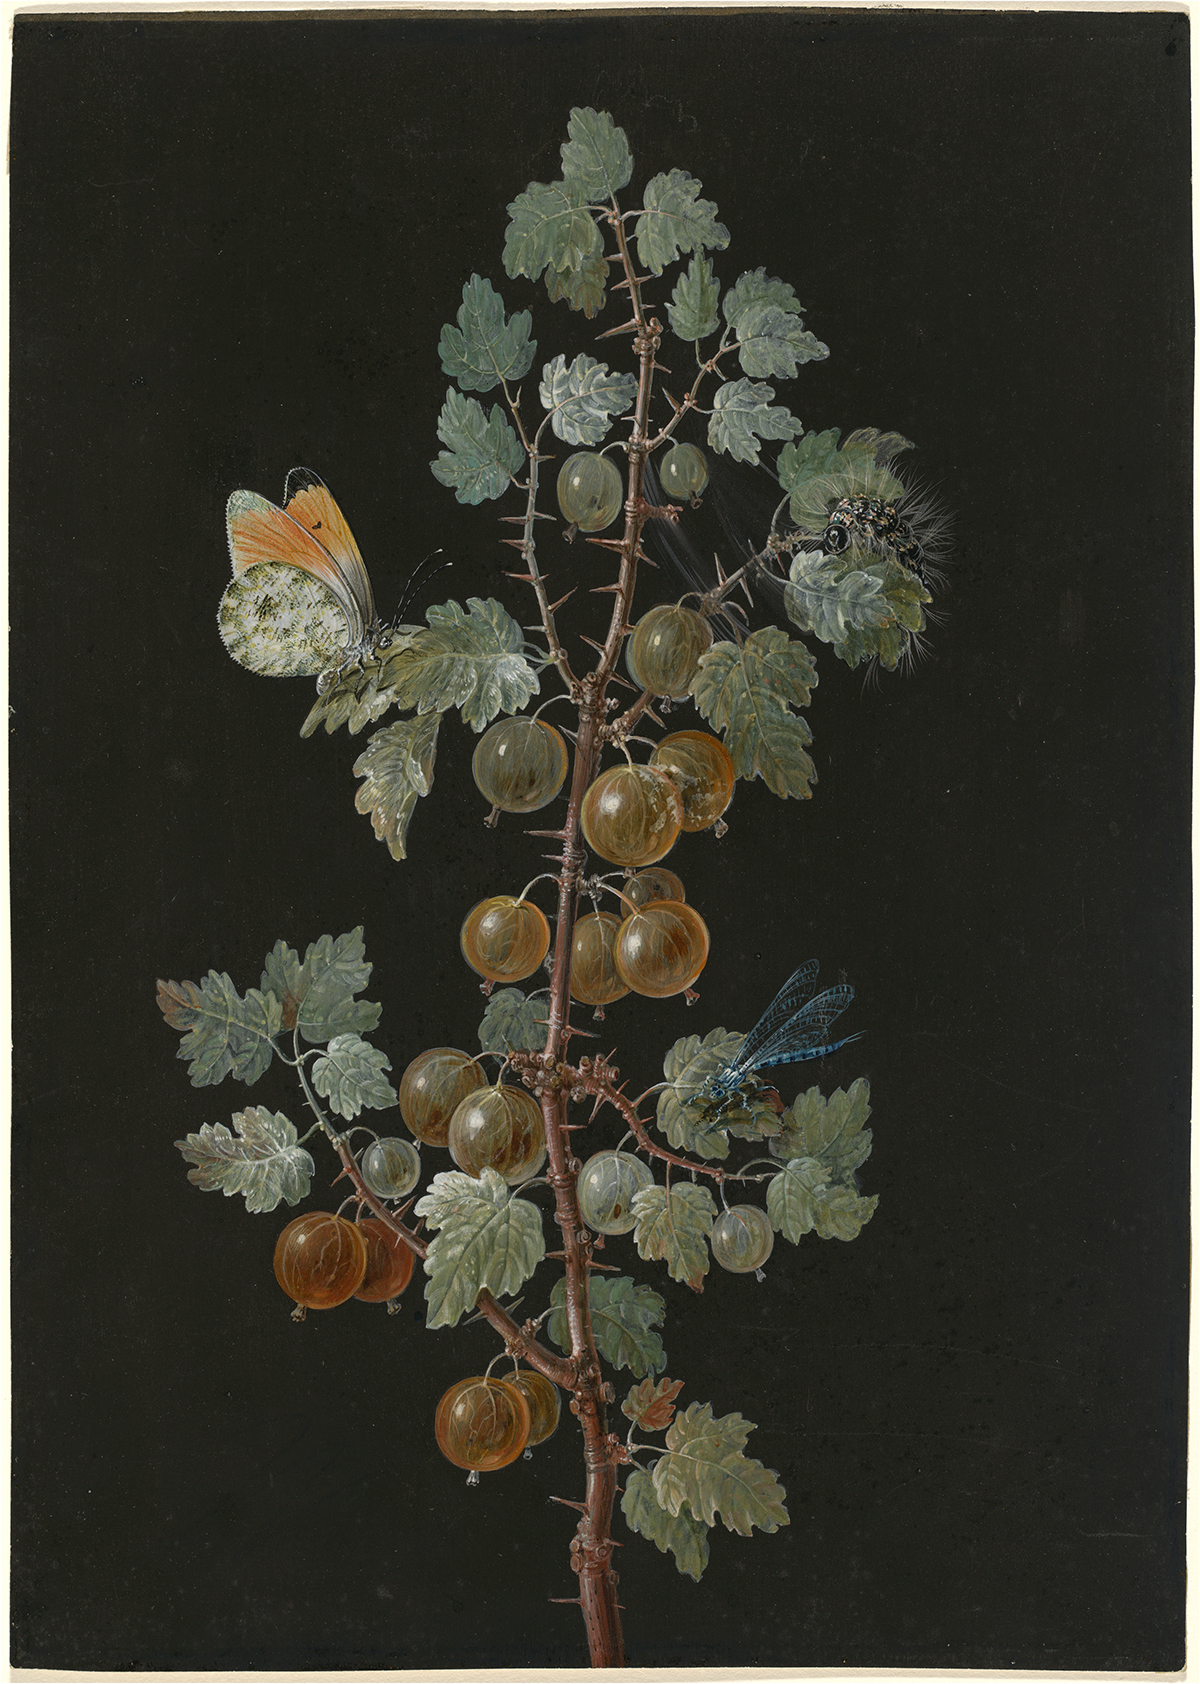 トンボ、クモマツマキチョウ、イモムシのいるグーズベリーの枝 by Barbara Regina Dietzsch - 18世紀 - 28.7 x 20.4 cm 